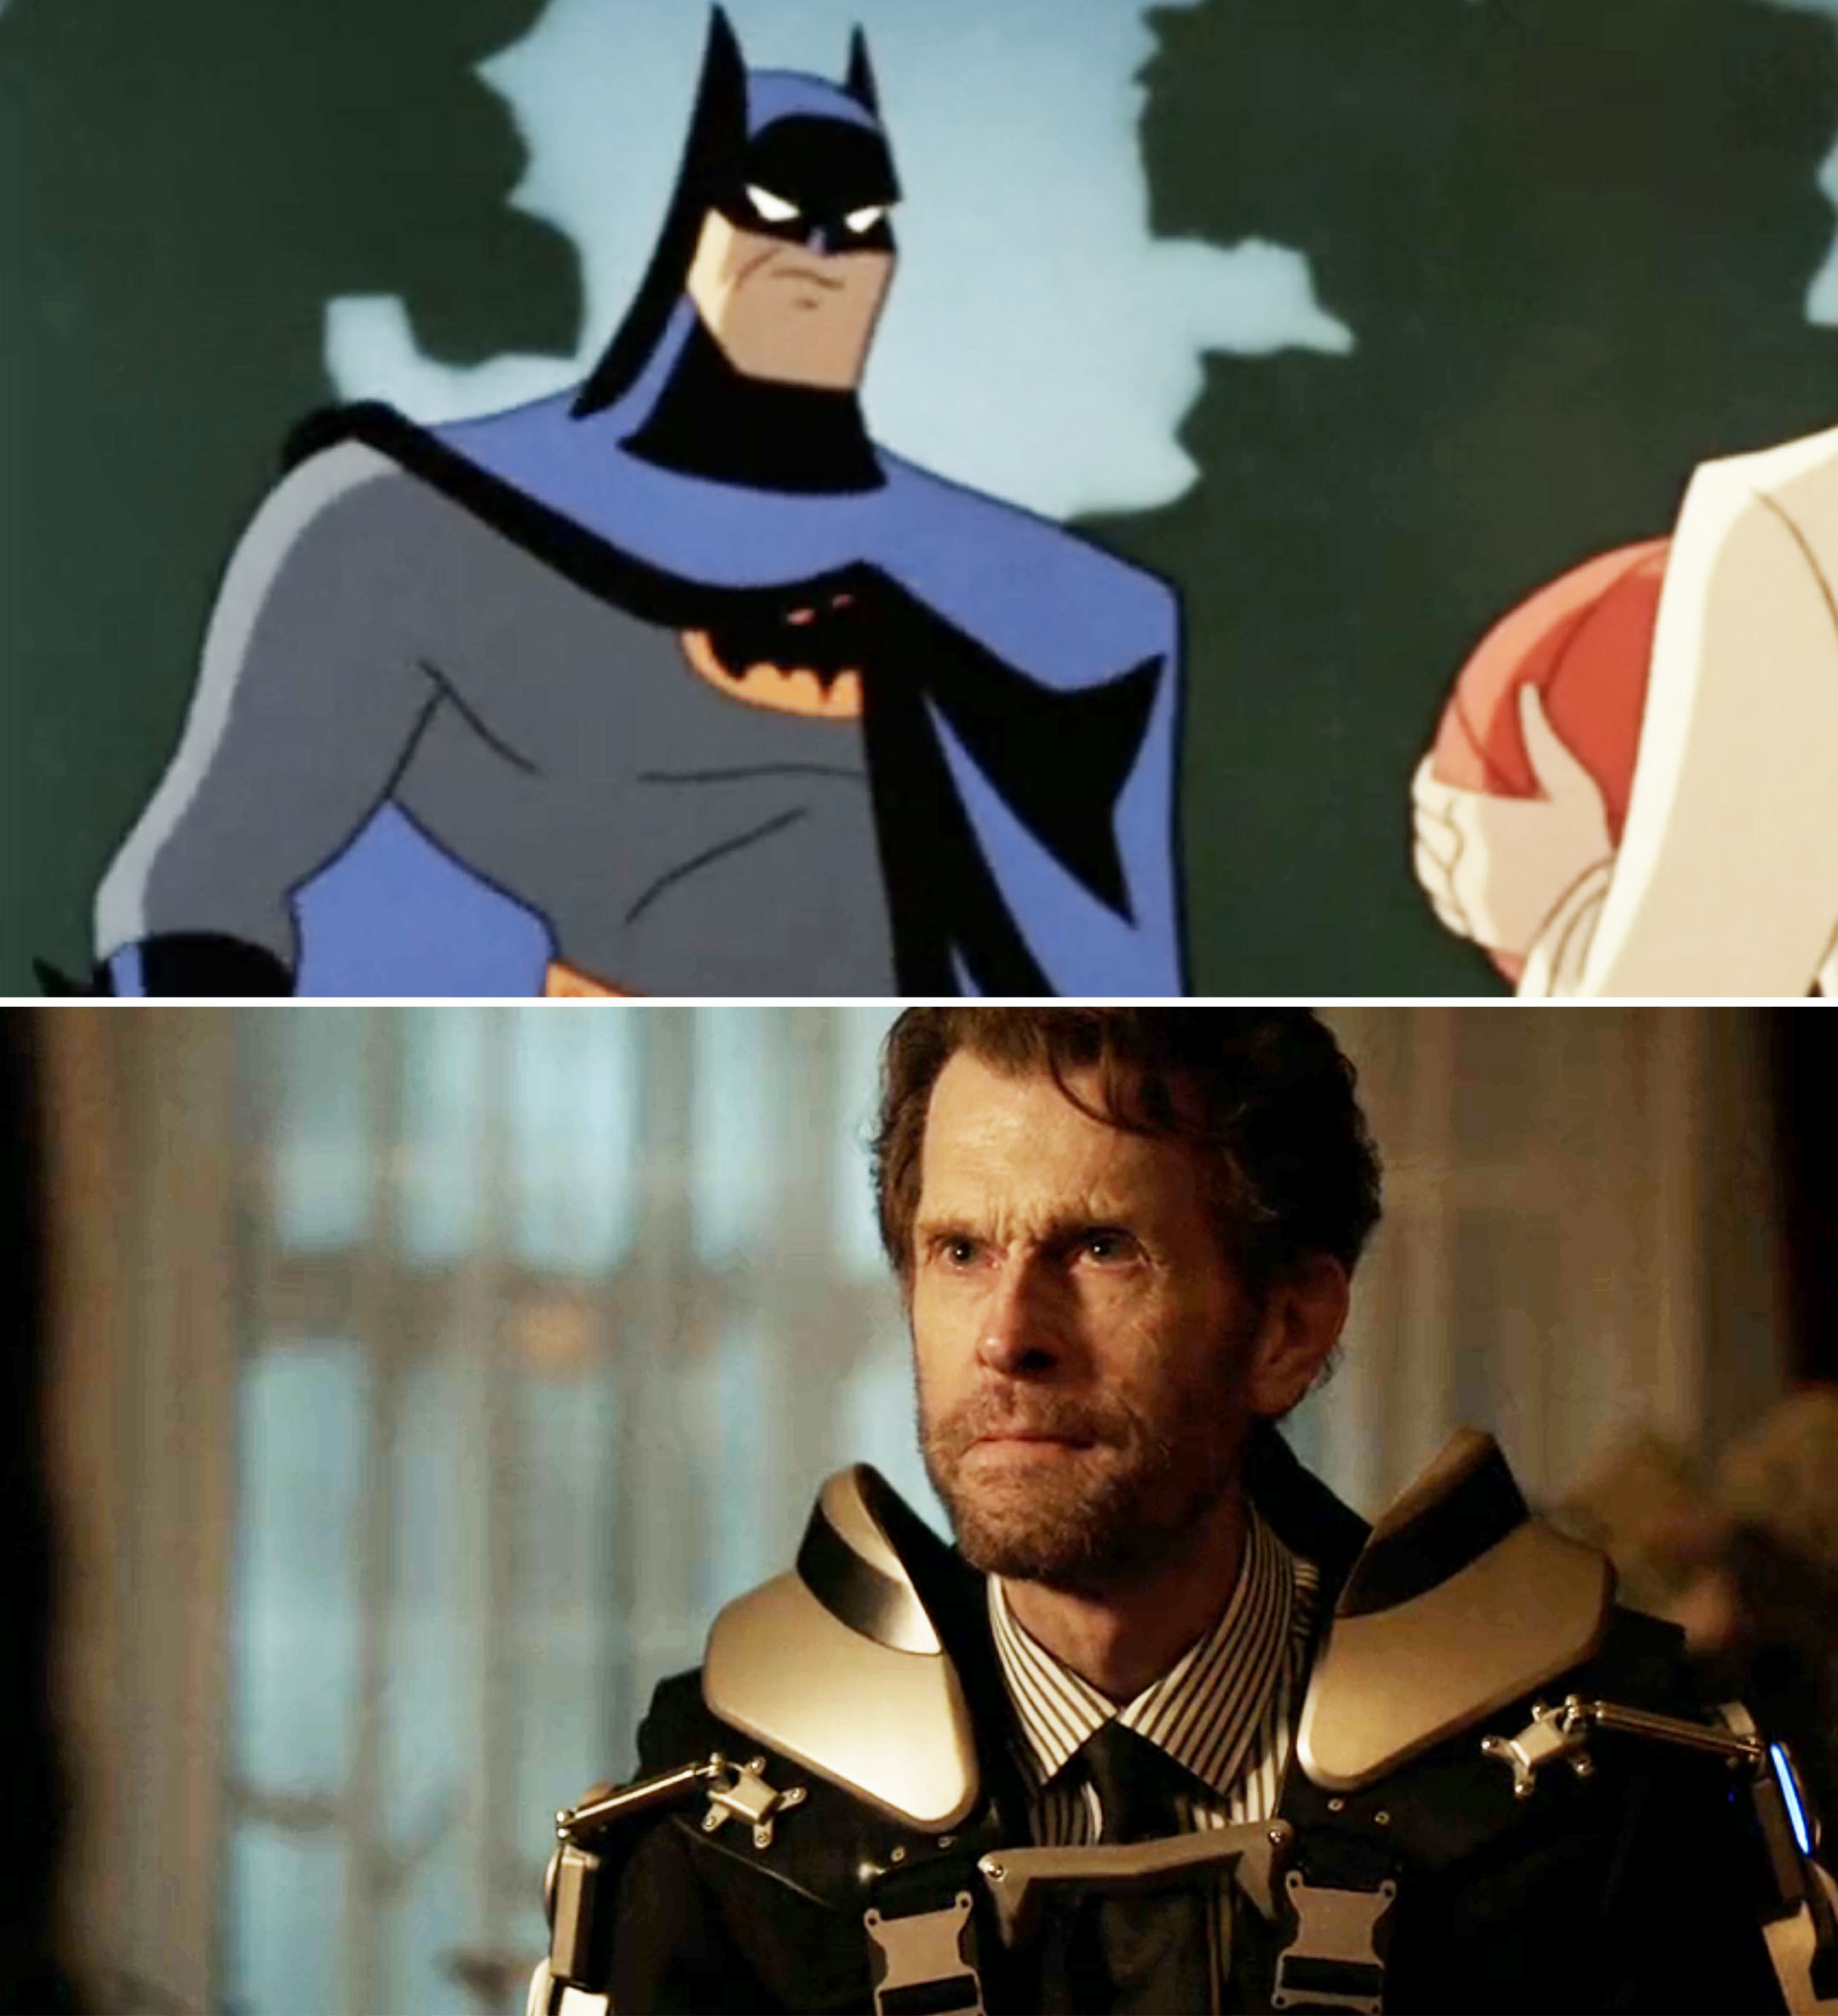 Screen grabs from &quot;Batman&quot; and &quot;Batwoman&quot;